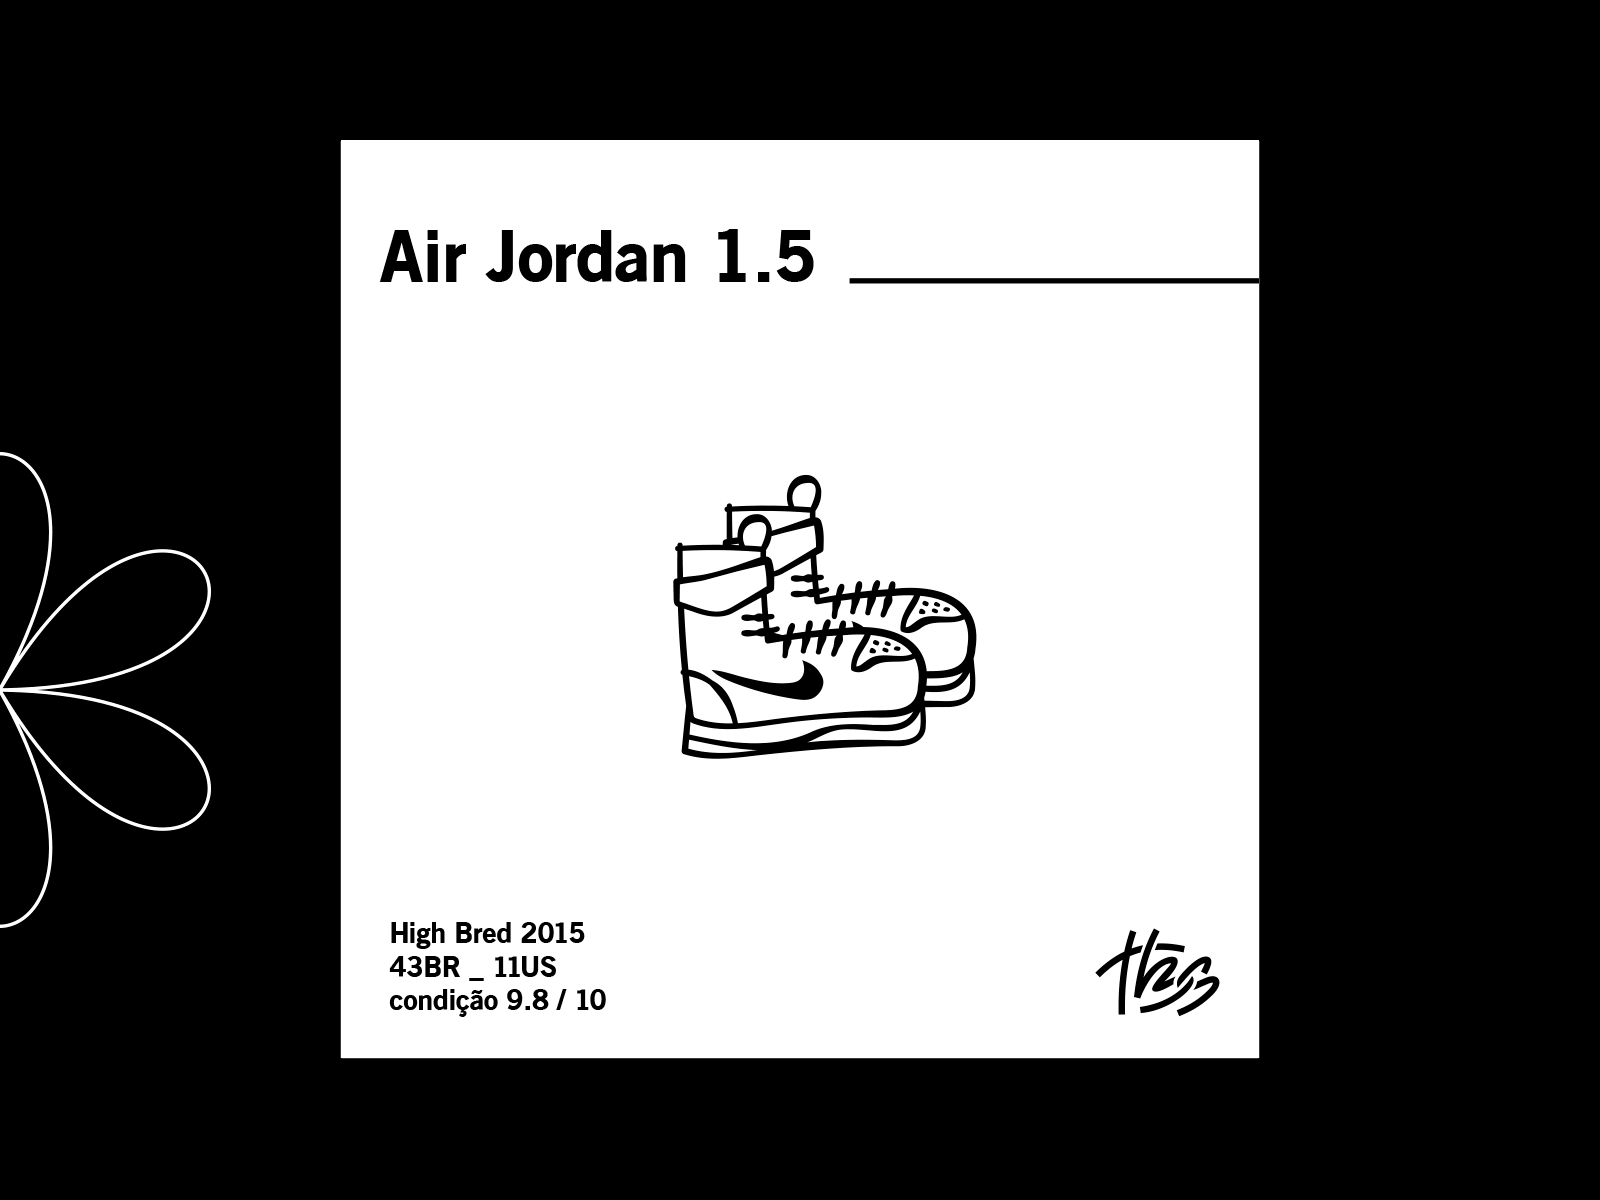 Illustration - Air Jordan 1.5 air jordan design drawing graffiti hype illustration illustrator nike sneakers vector